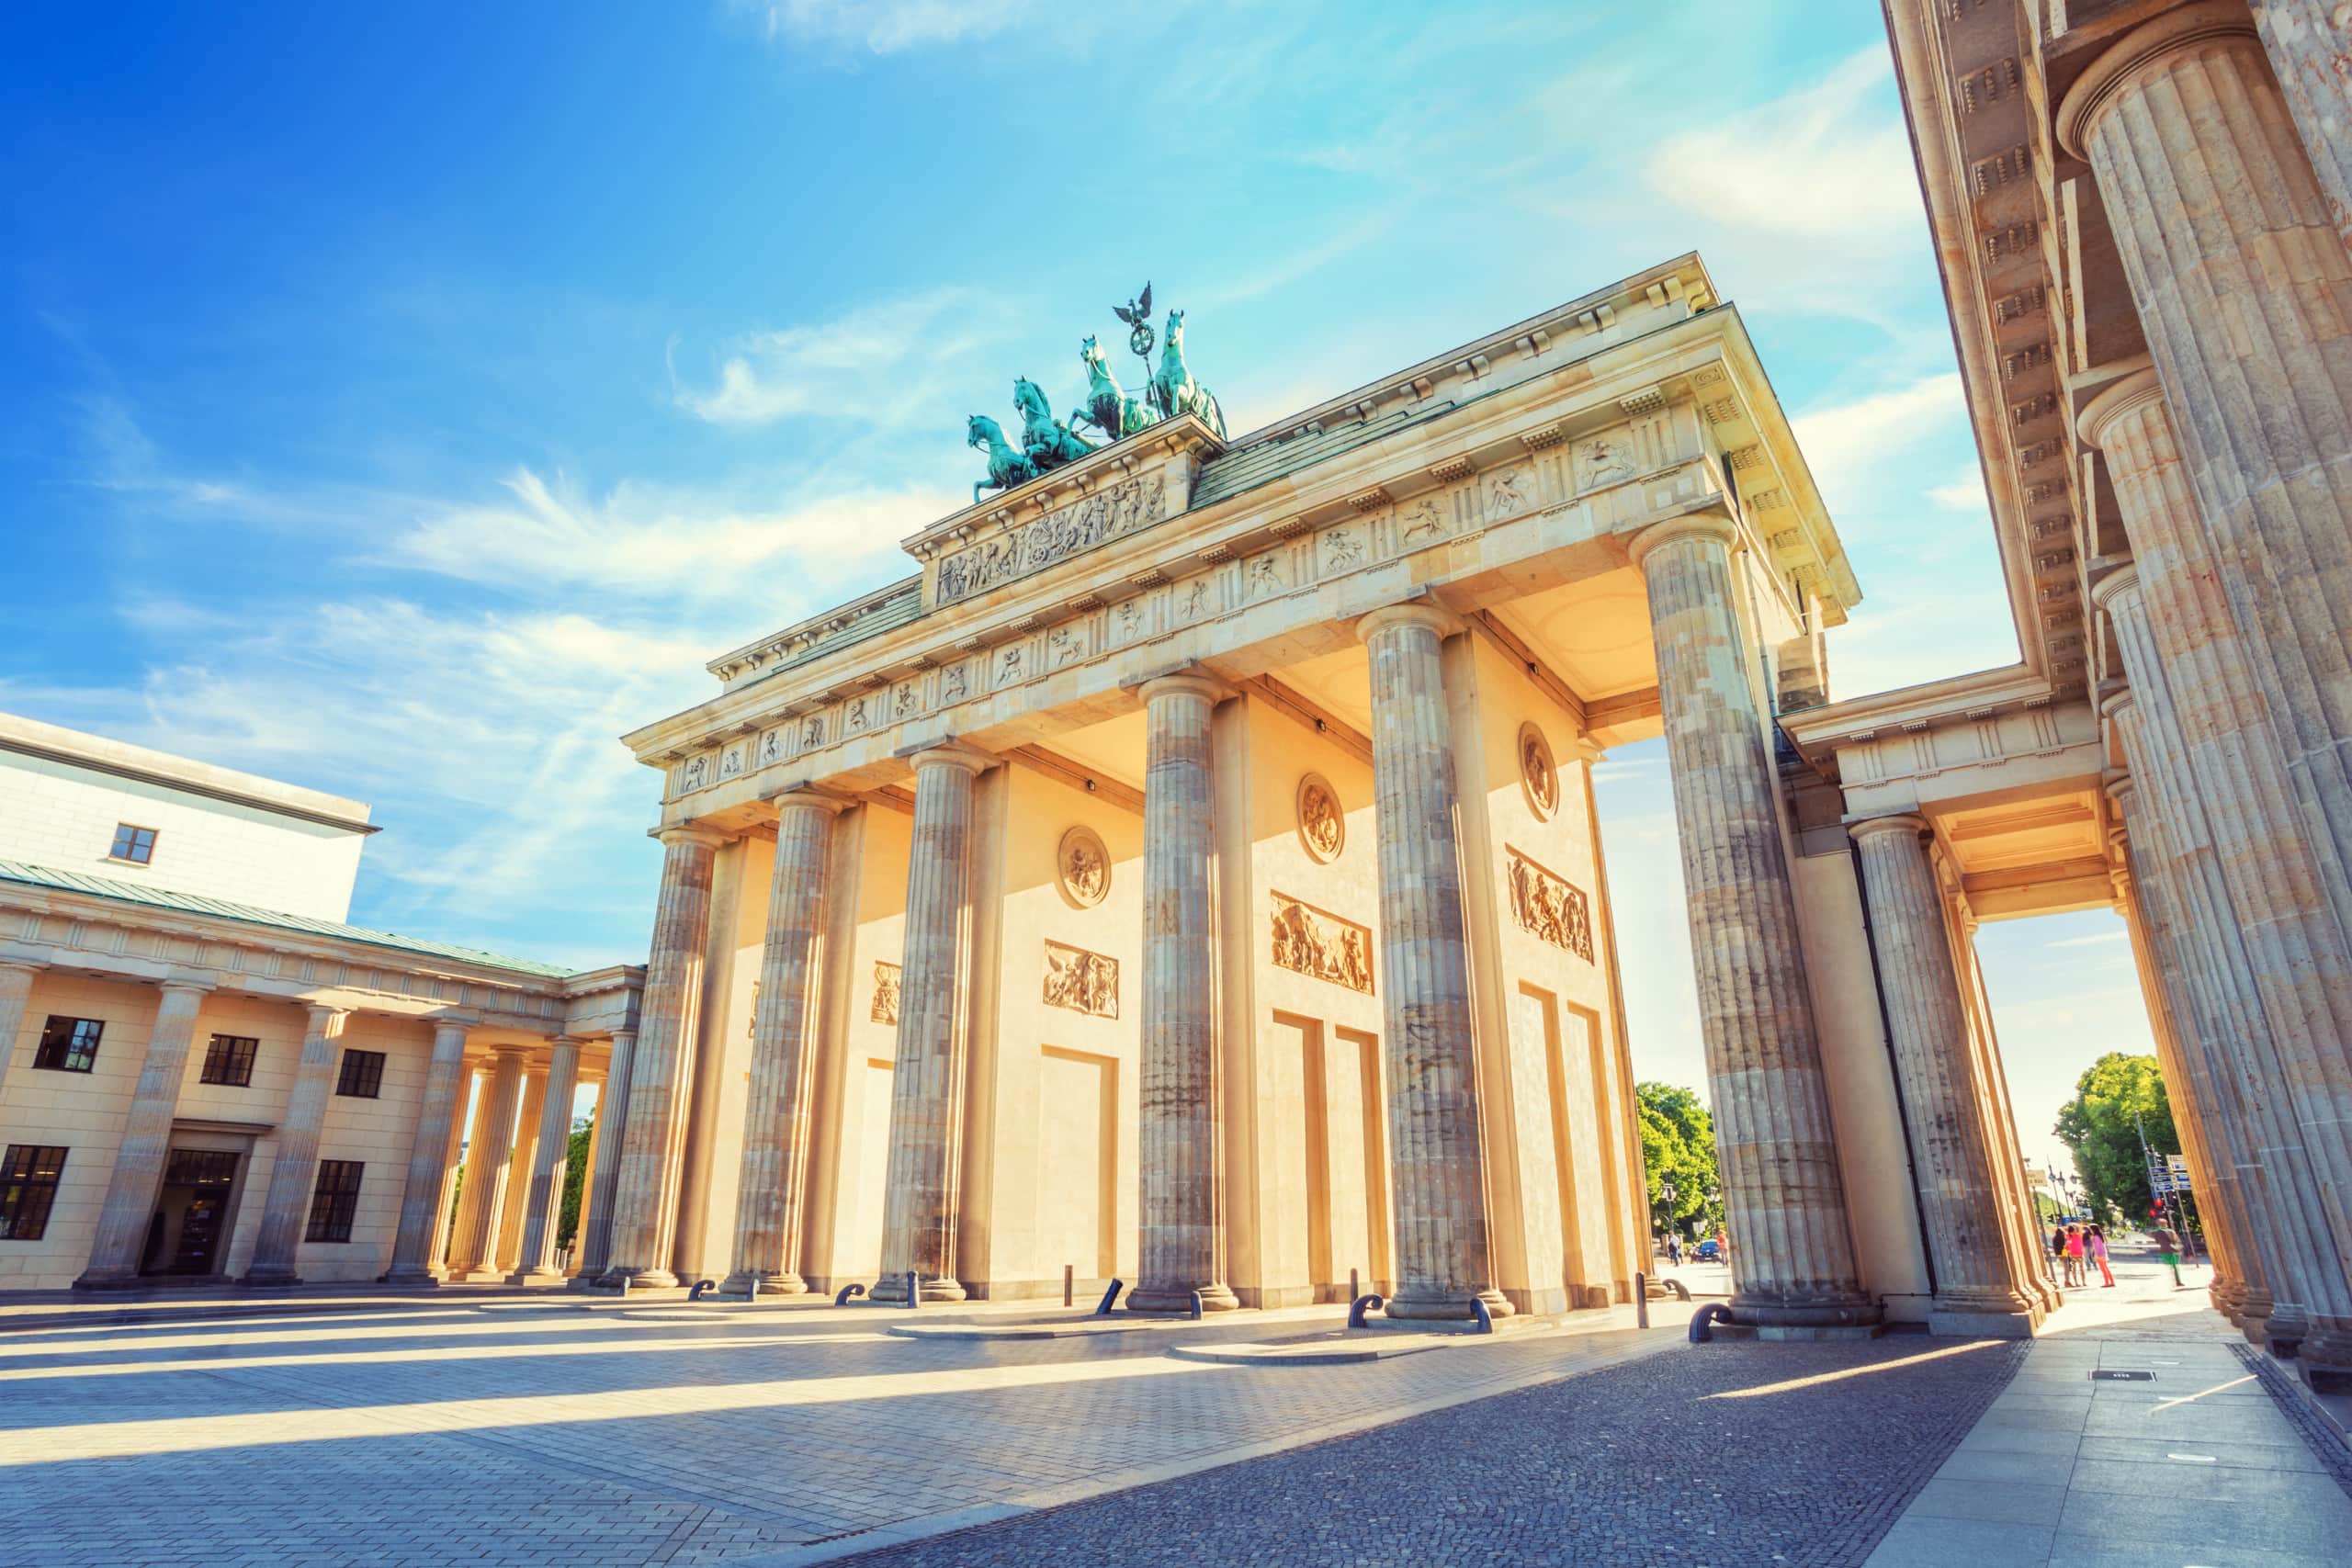 Berlin Brandenburg Gate, Berlin, Germany